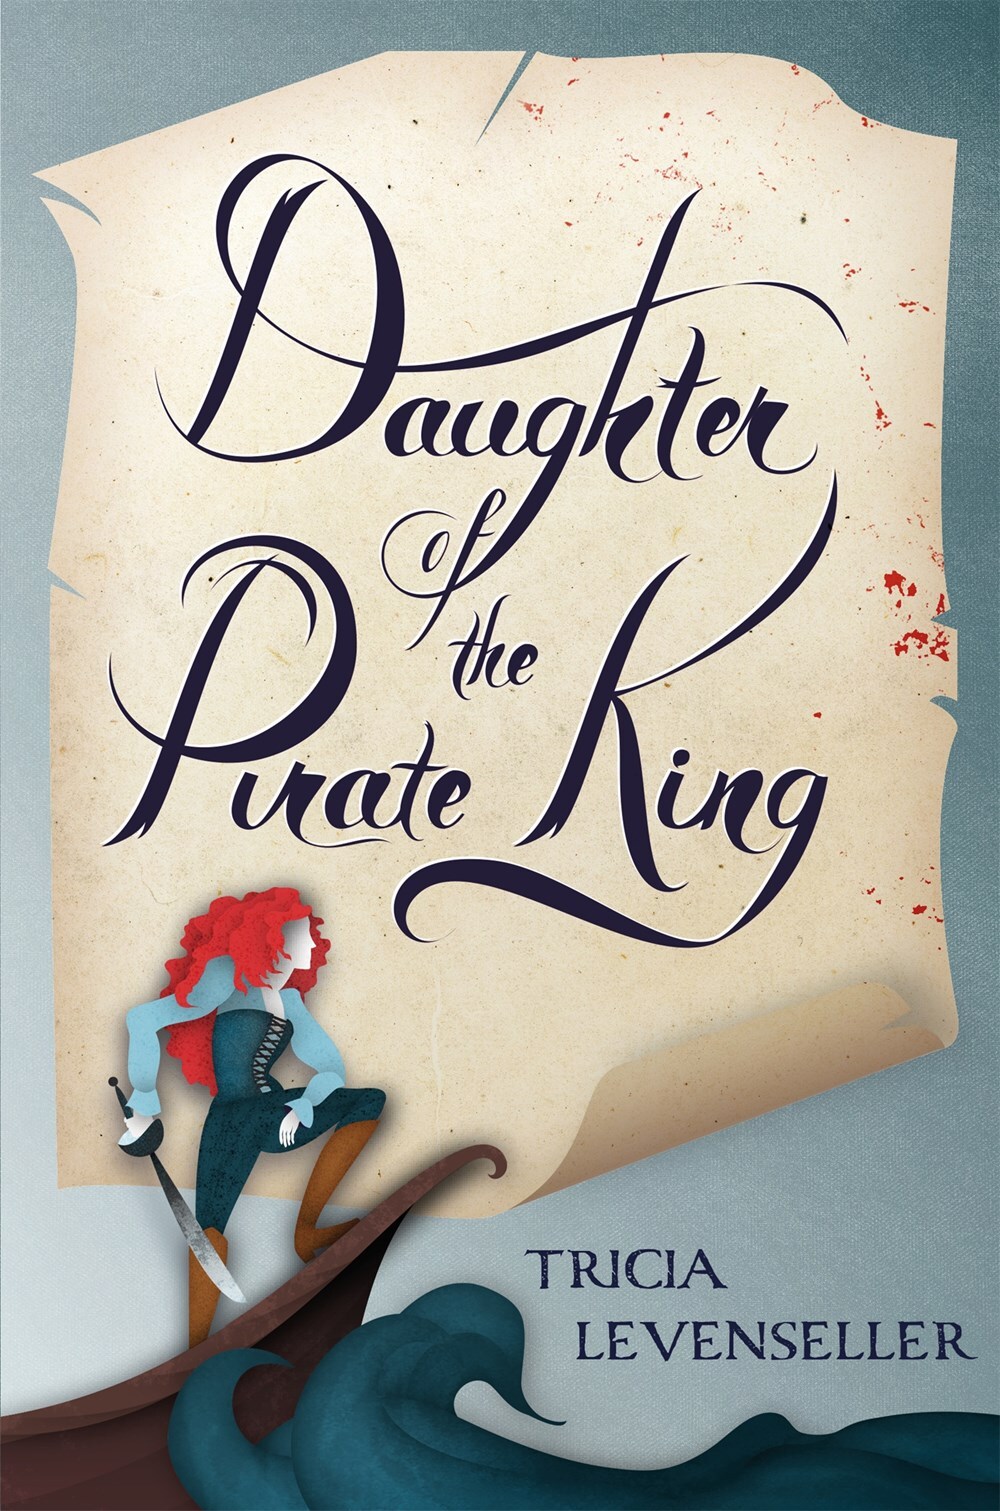 Couvertures, images et illustrations de La Fille du roi pirate, Tome 1 de  Tricia Levenseller